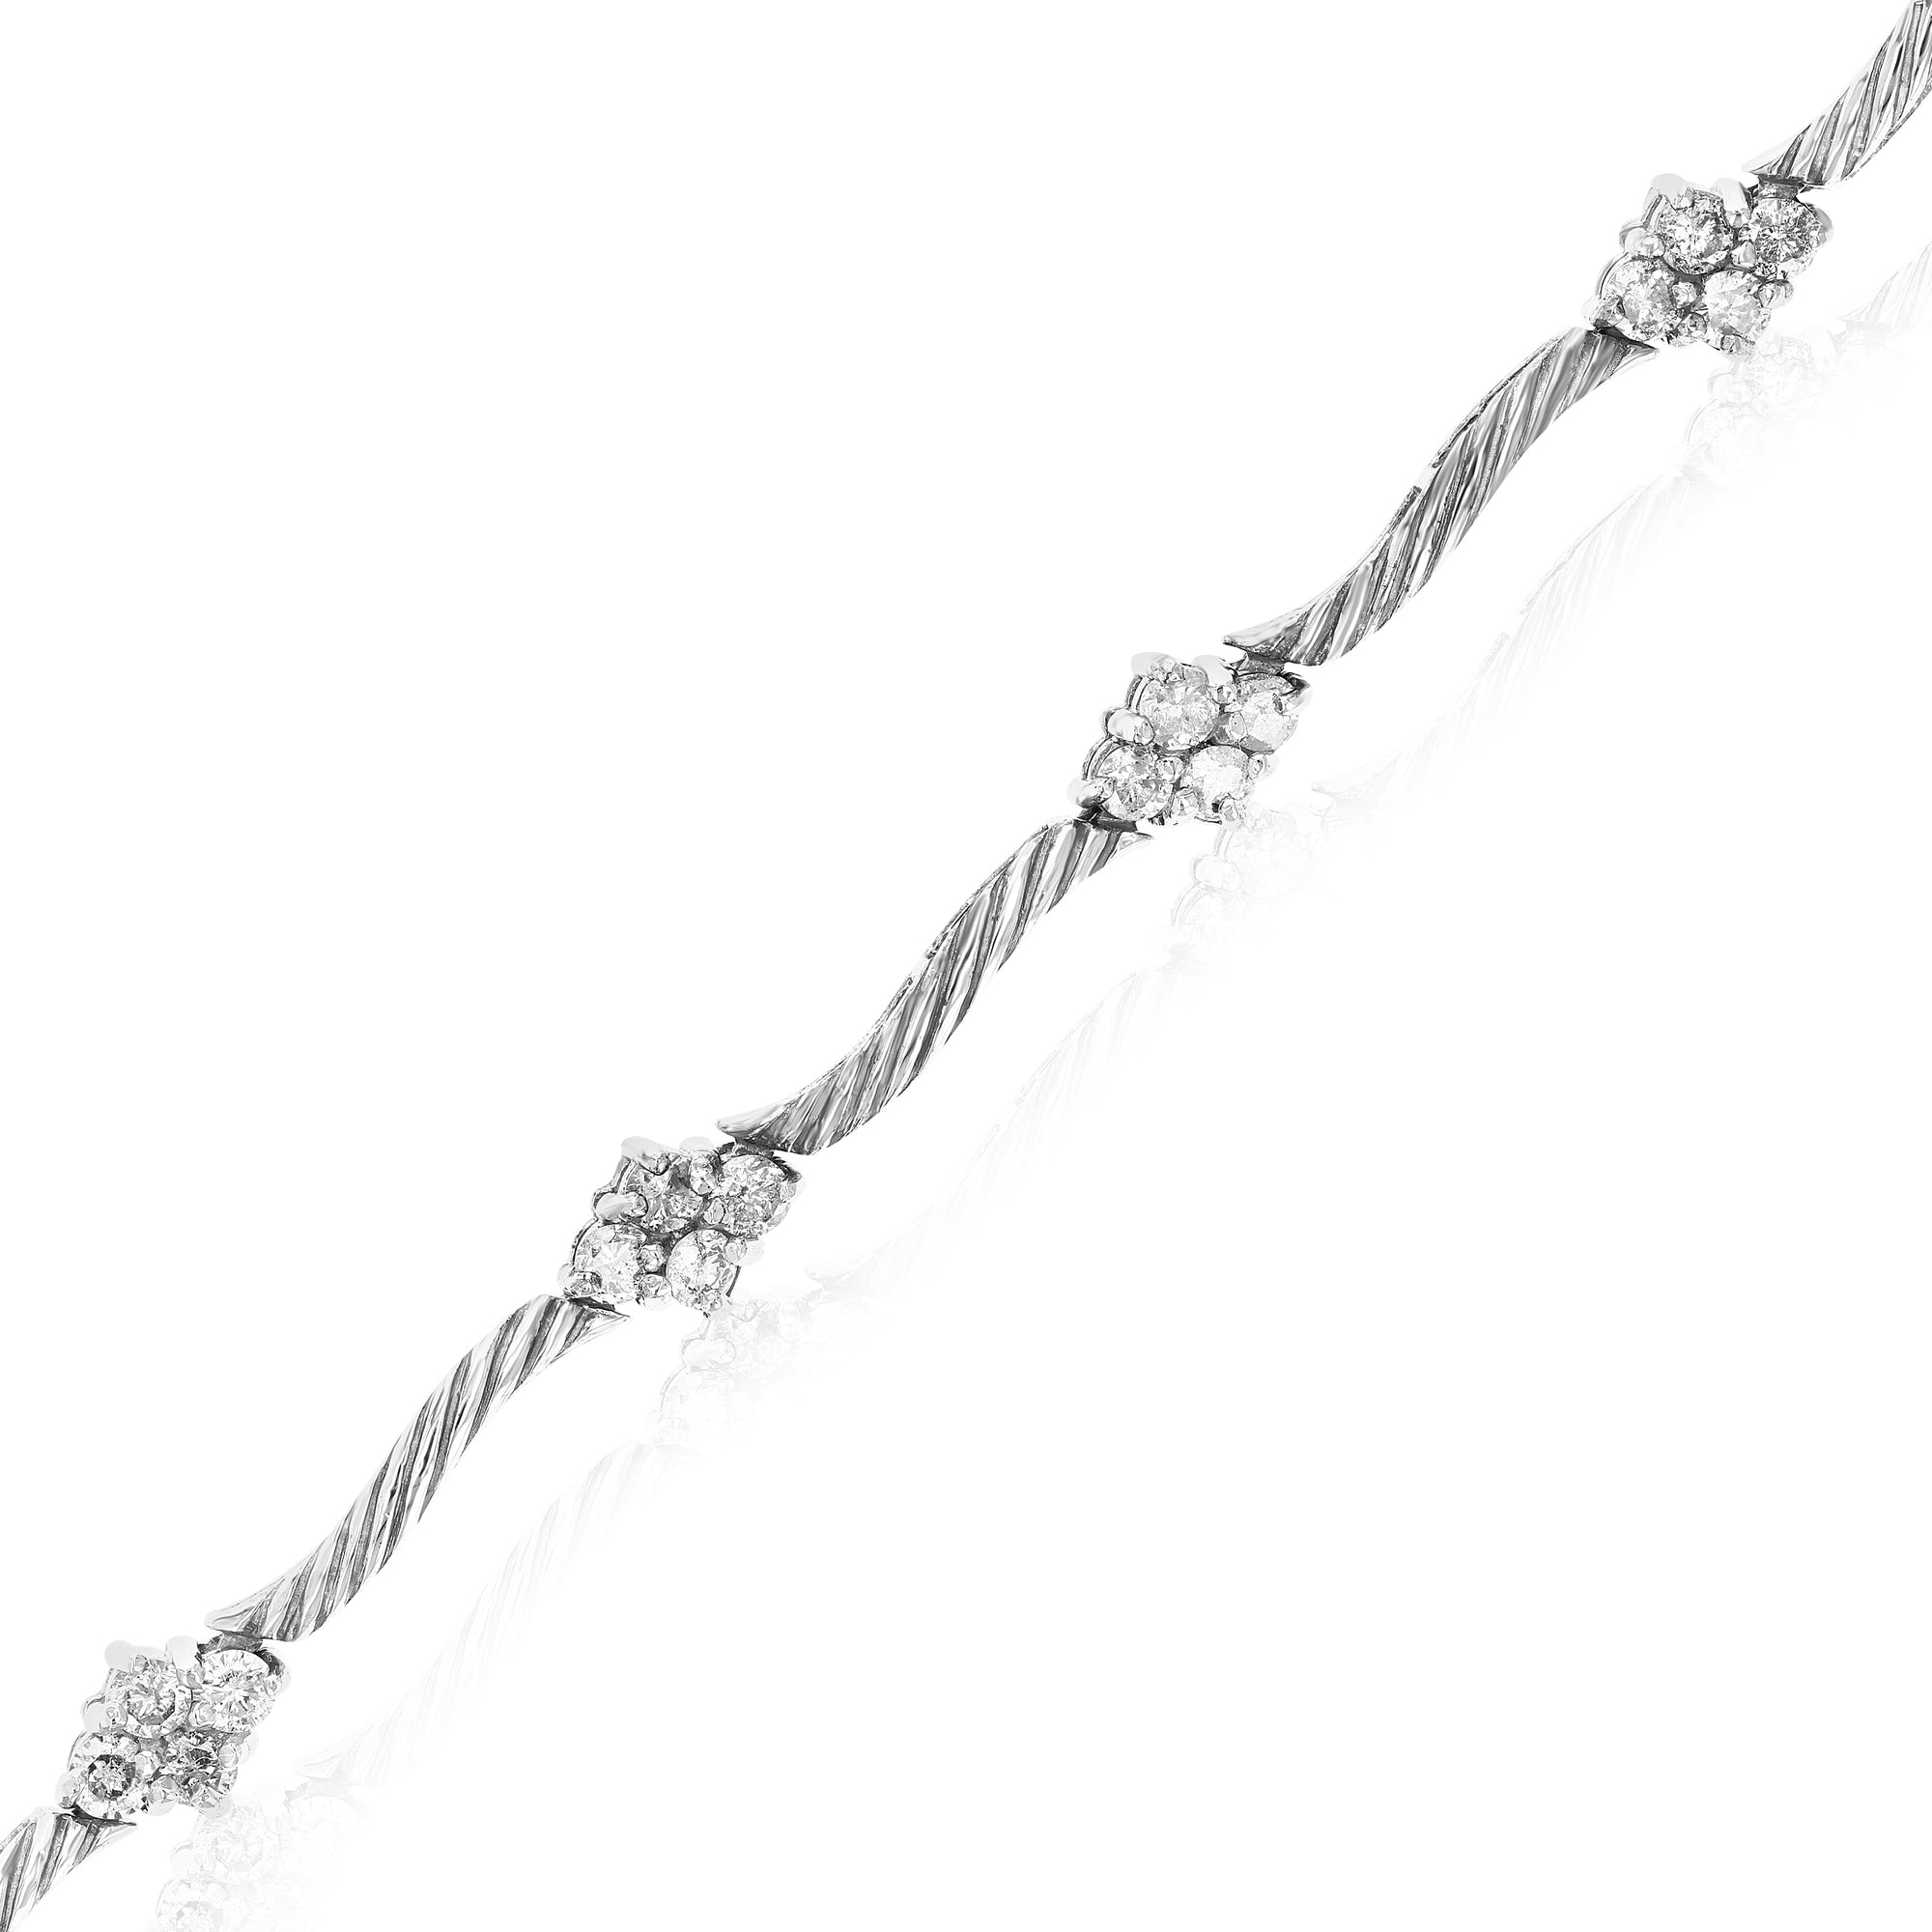 1.20 cttw Diamond Bracelet in Sterling Silver